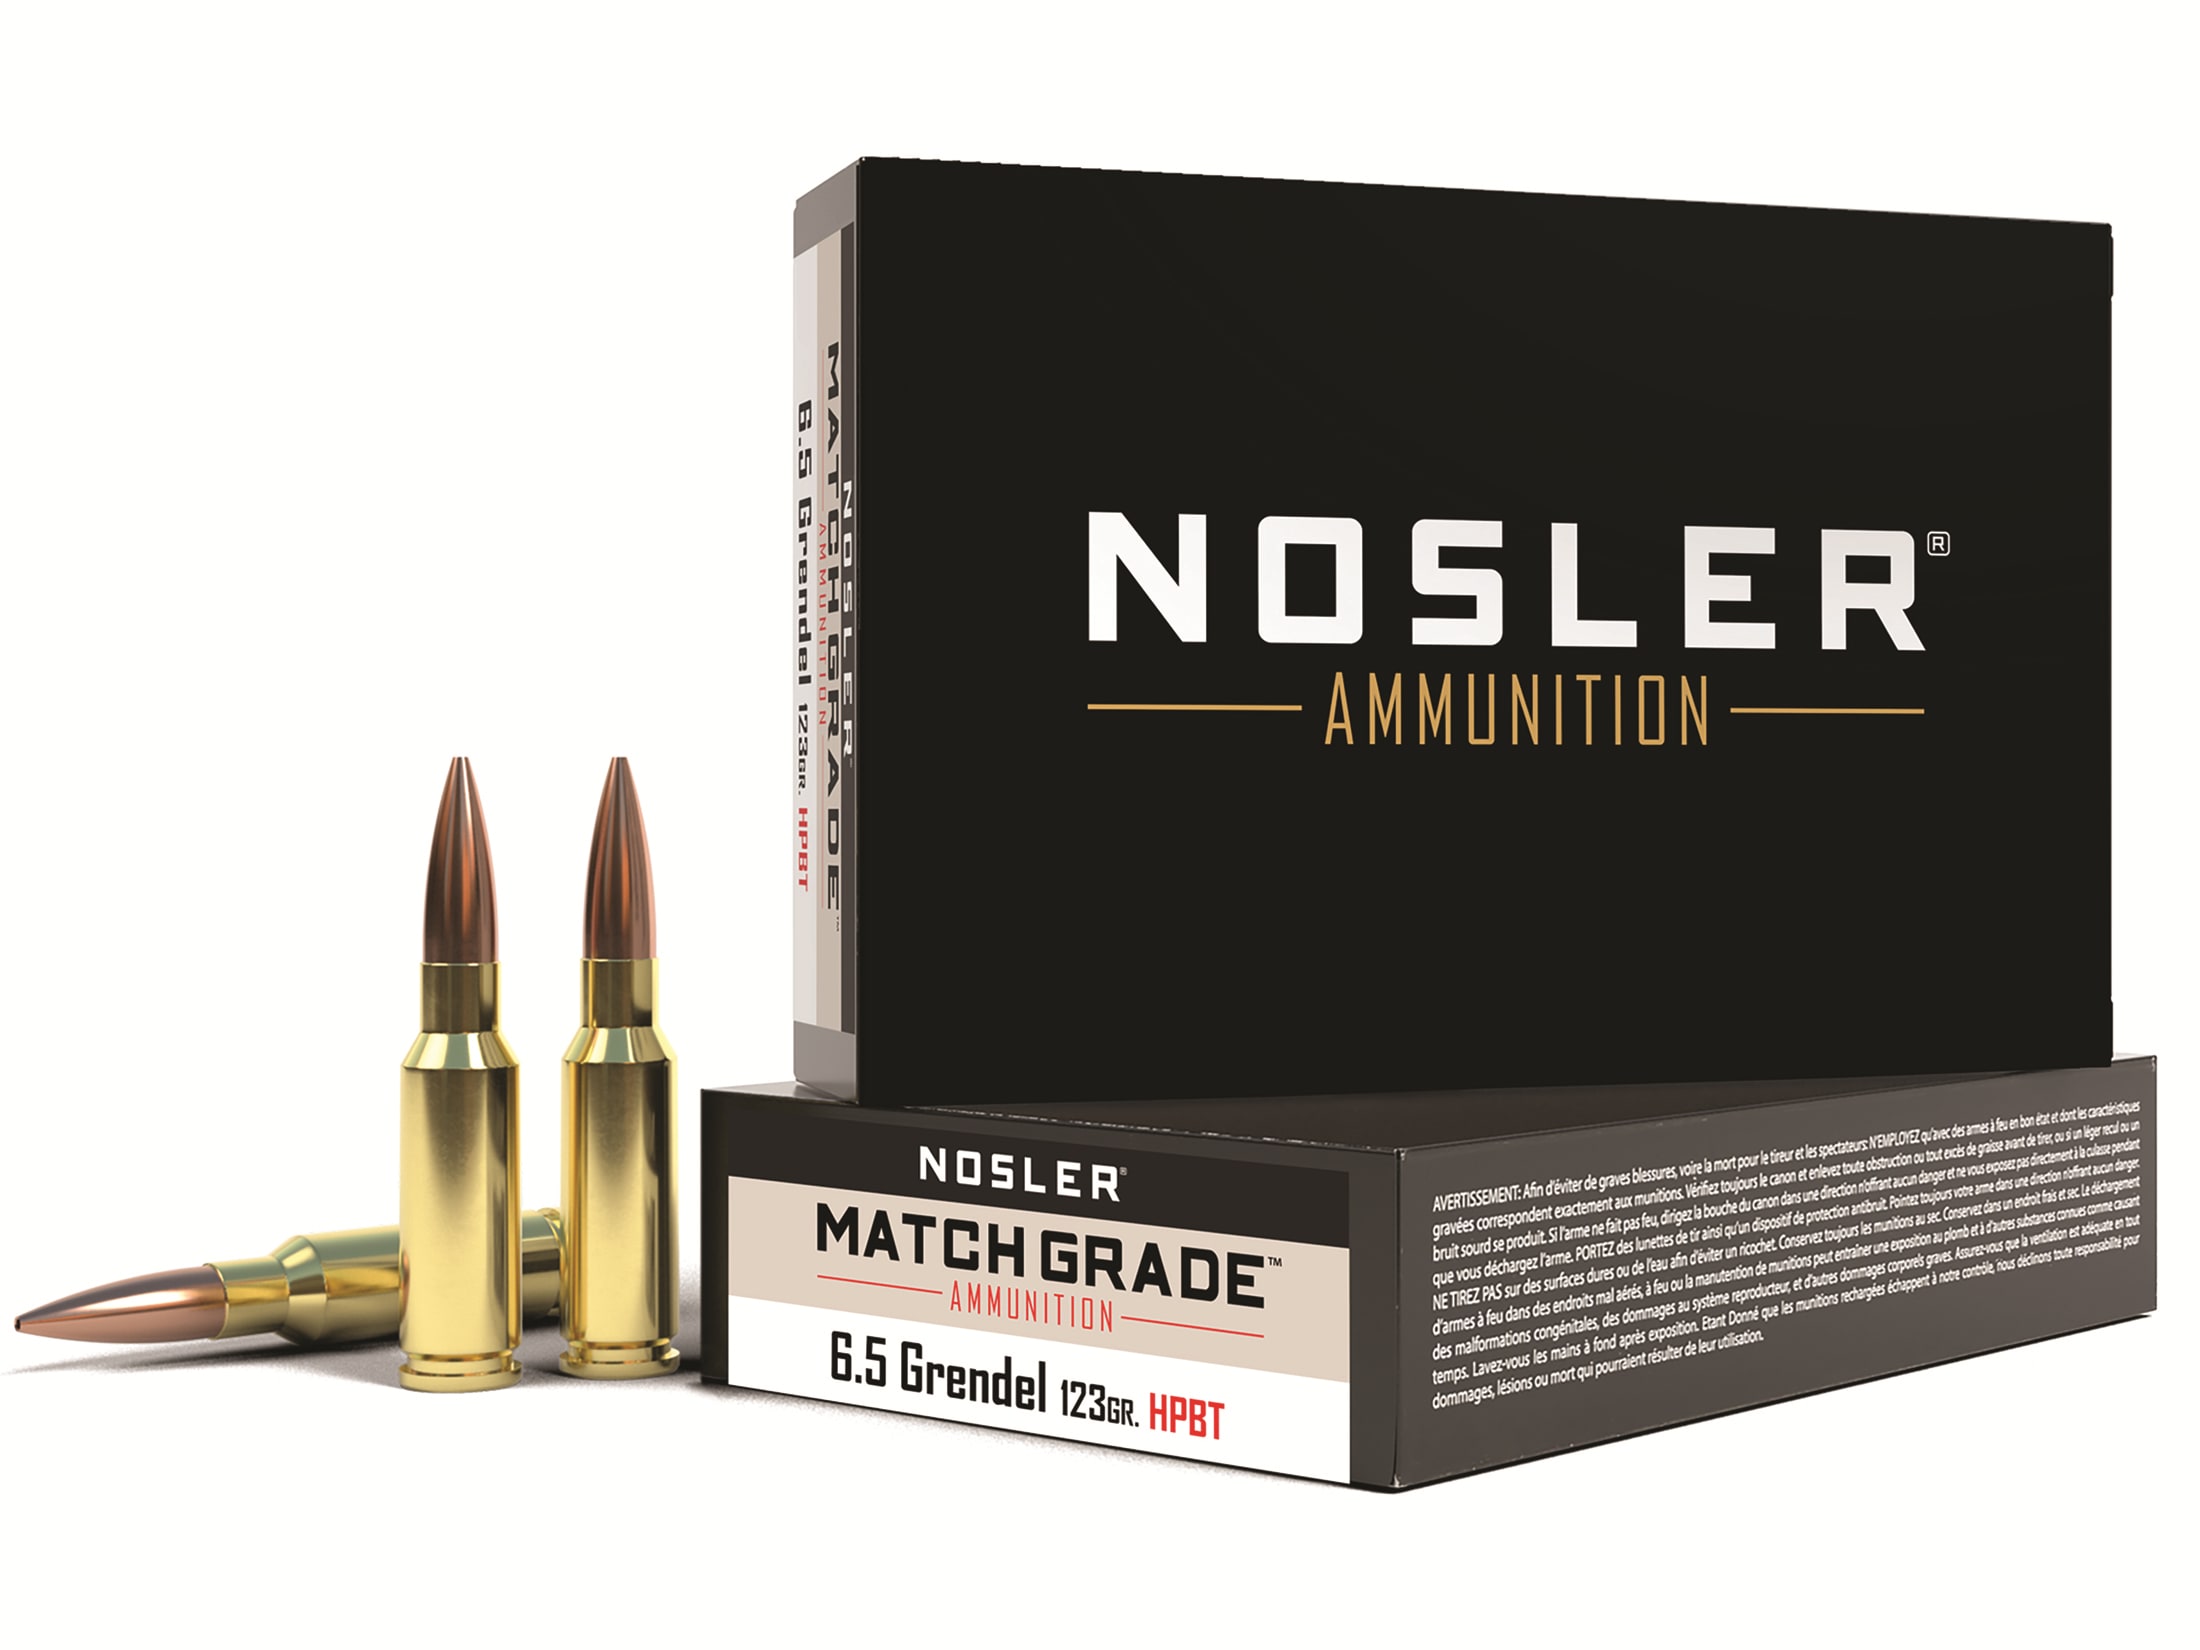 Reloading Pack, 100 new Nosler brass, 500 new Nosler Match Monster 123gr  bullets, $200 : r/65Grendel